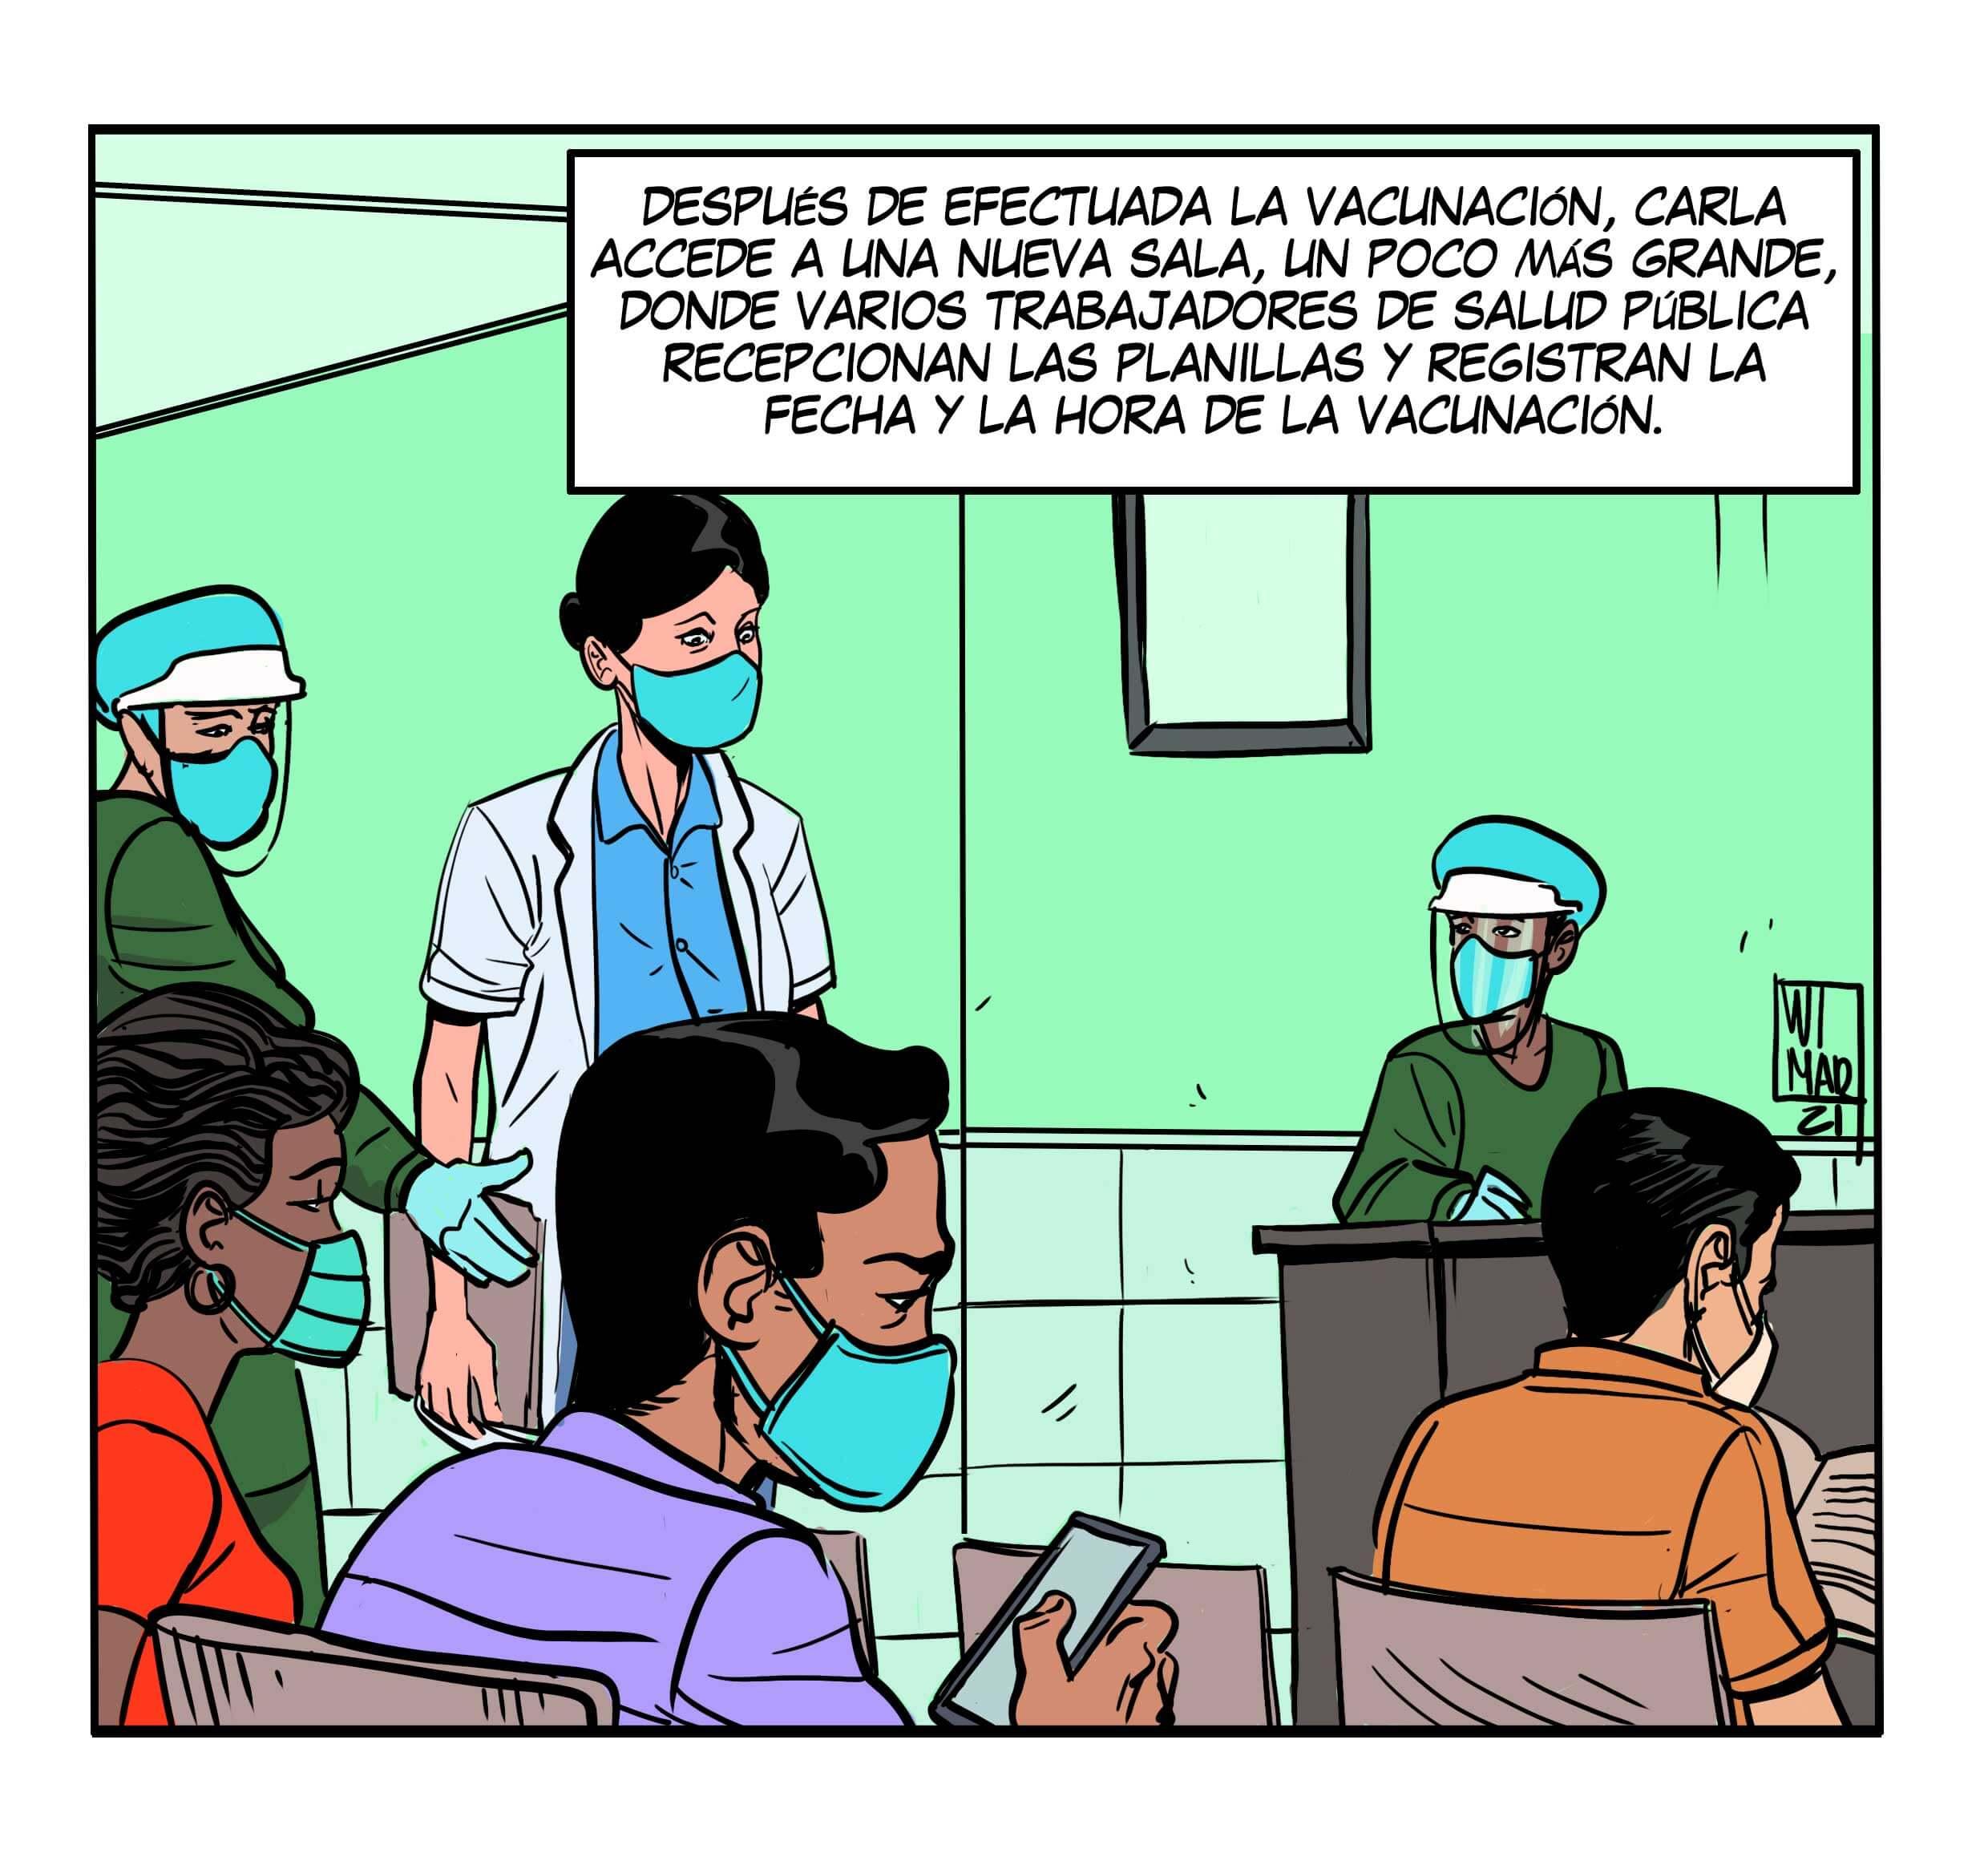 Fase III del ensayo clínico de Soberana 02 en Cuba